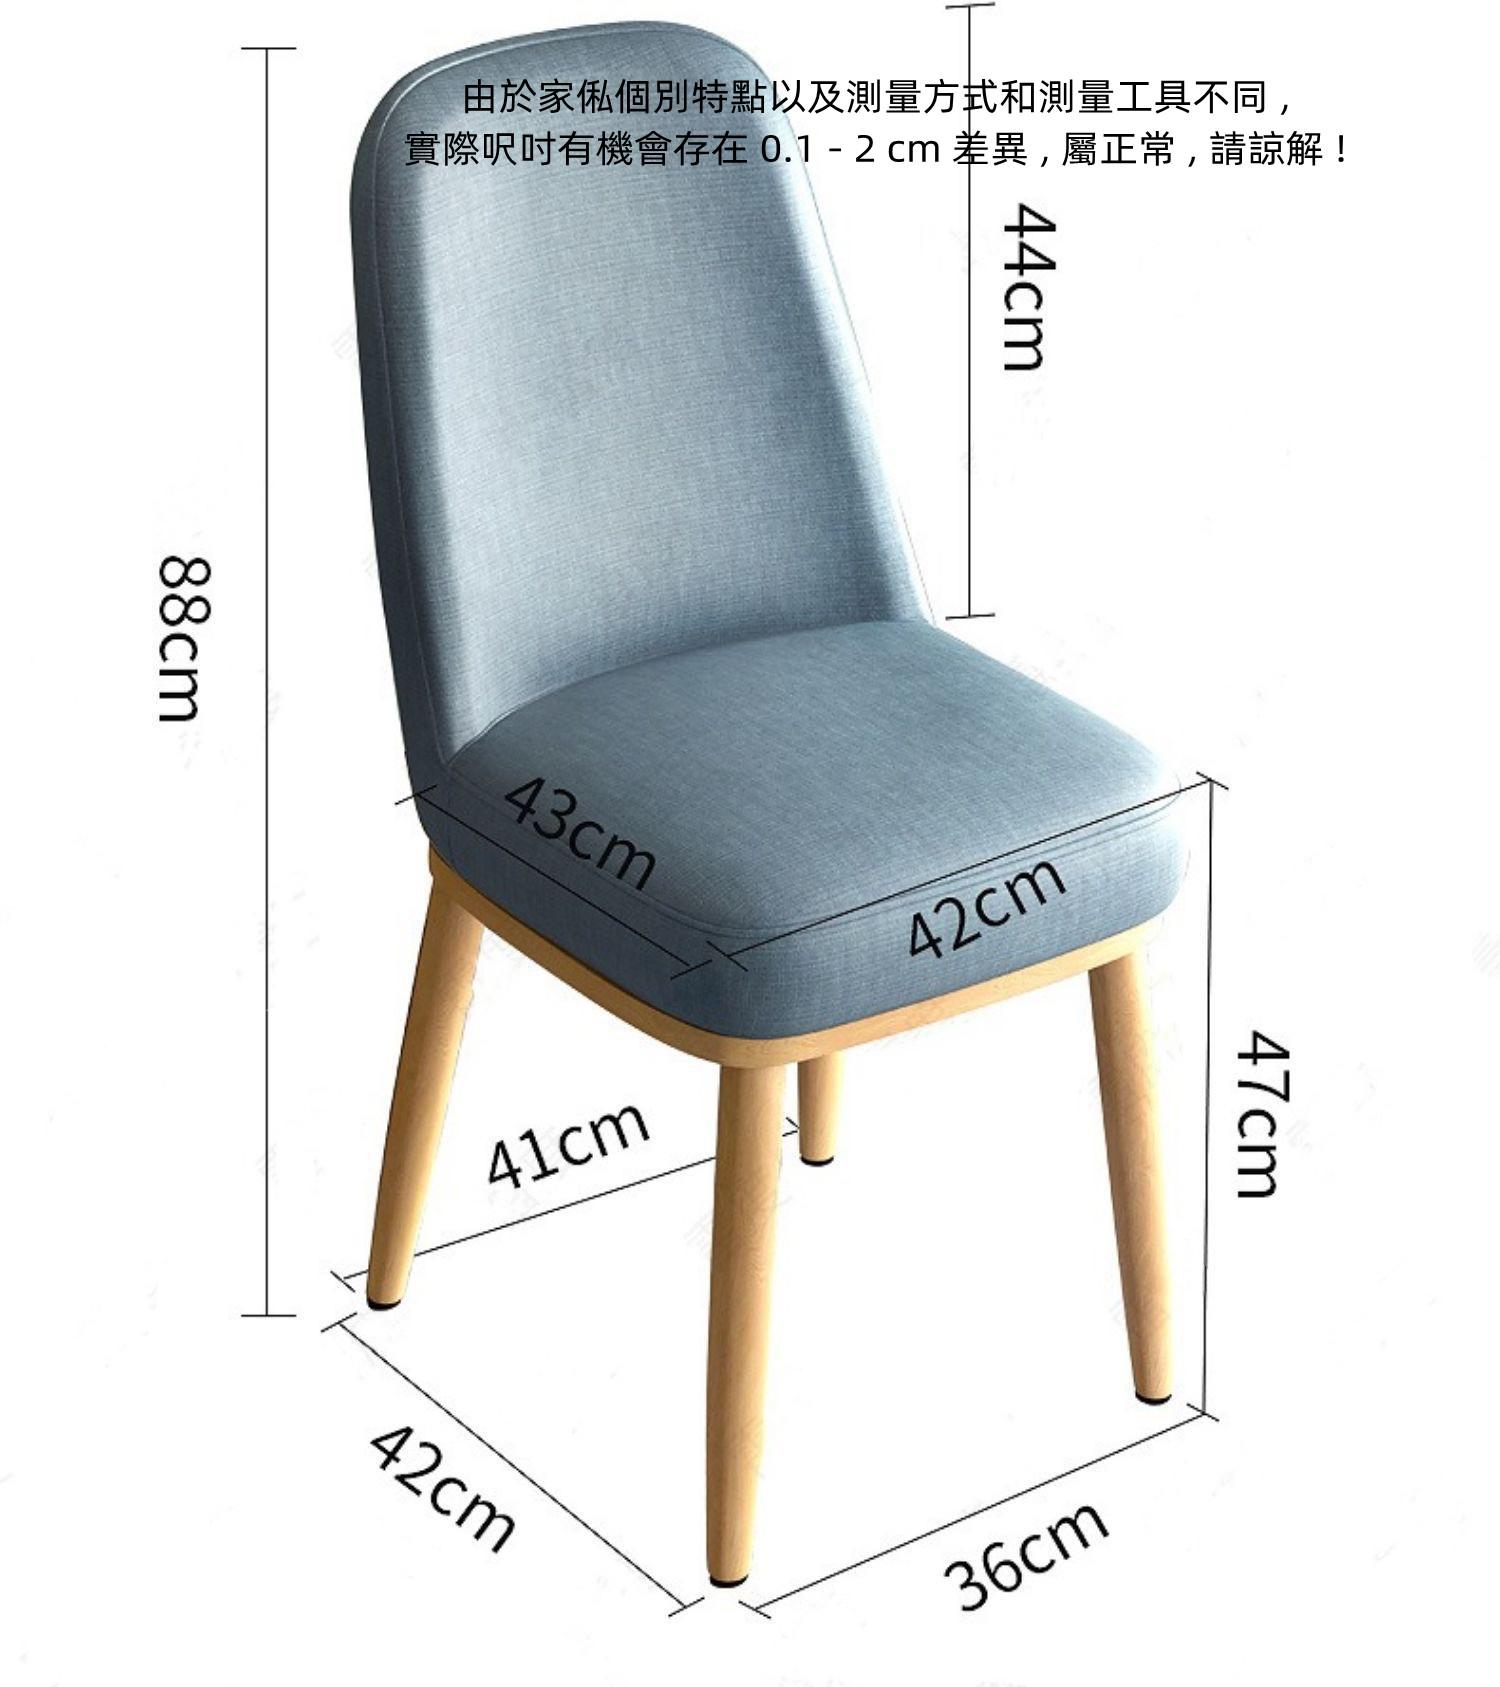 陳列品一張 米色 $299  時尚系列 餐椅 (IS7259)